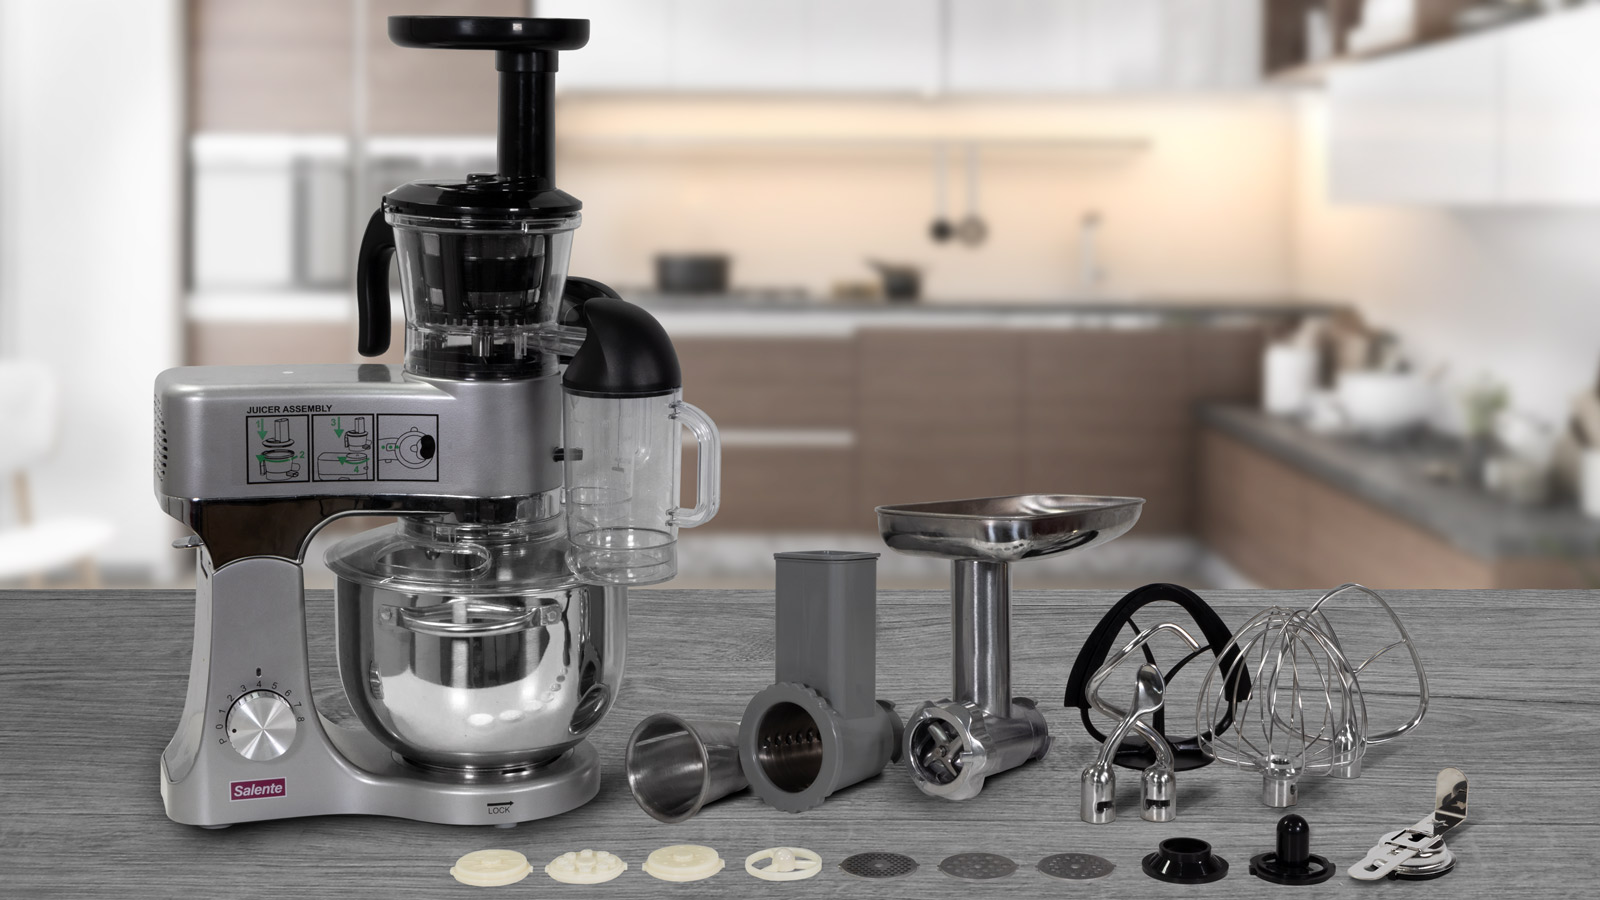 Obrázek Salente Rombo, kuchyňský robot s odšťavňovačem